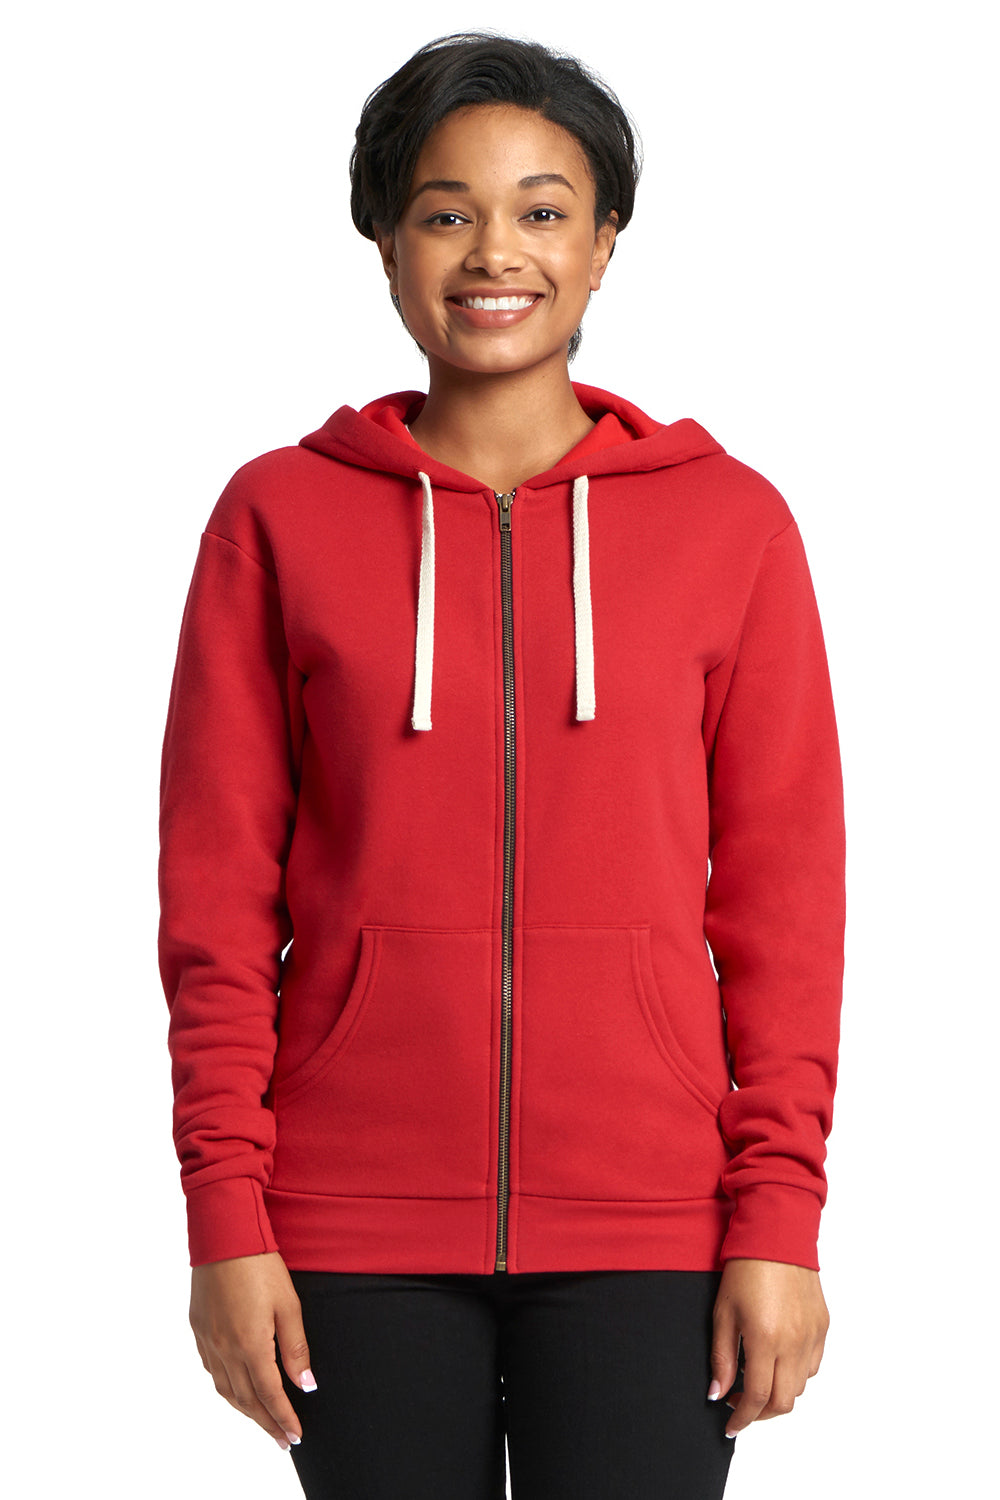 Next Level 9602 Fleece Full Zip Hooded Sweatshirt Hoodie Red Front